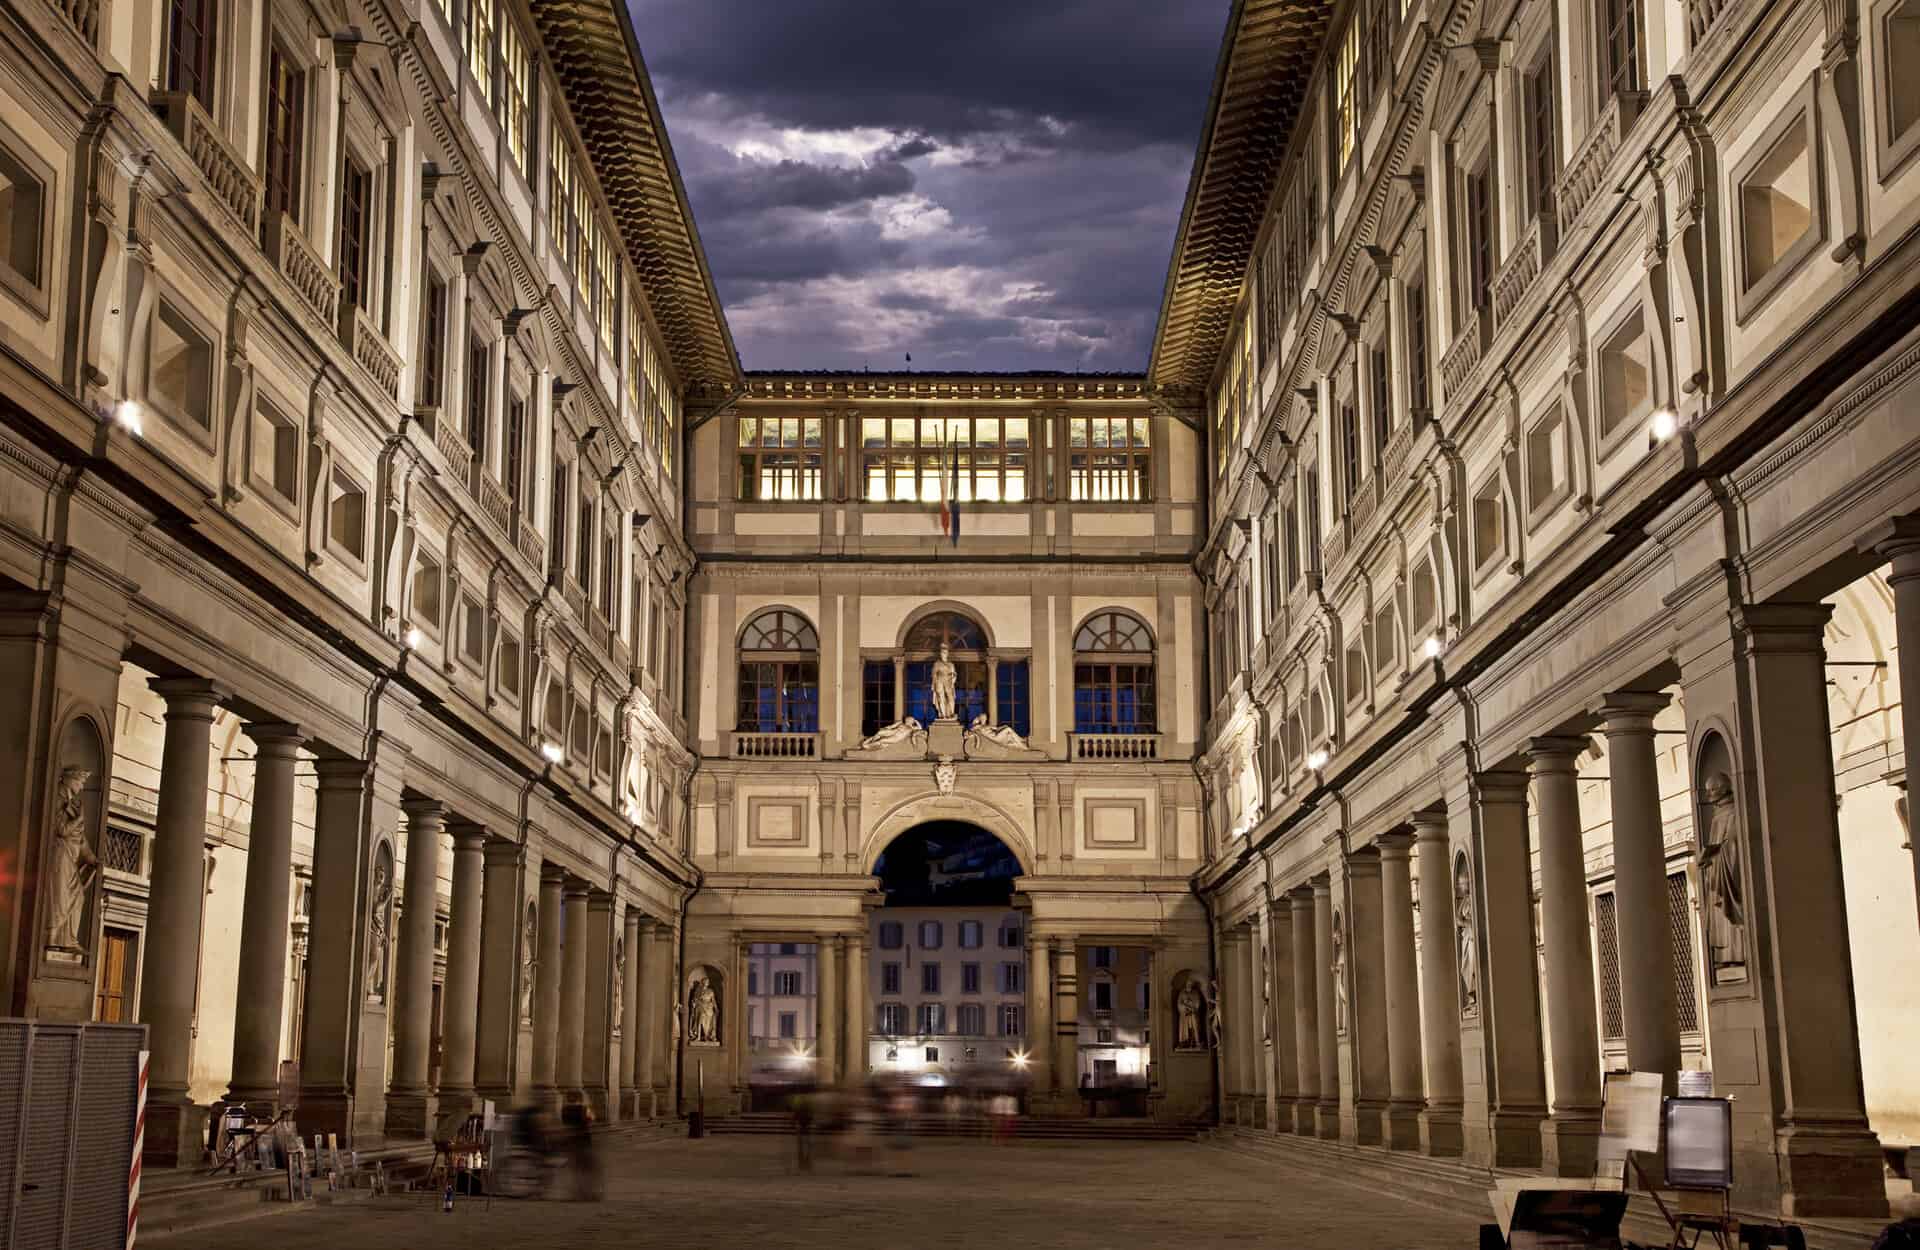 Night shot of Uffizi Gallery